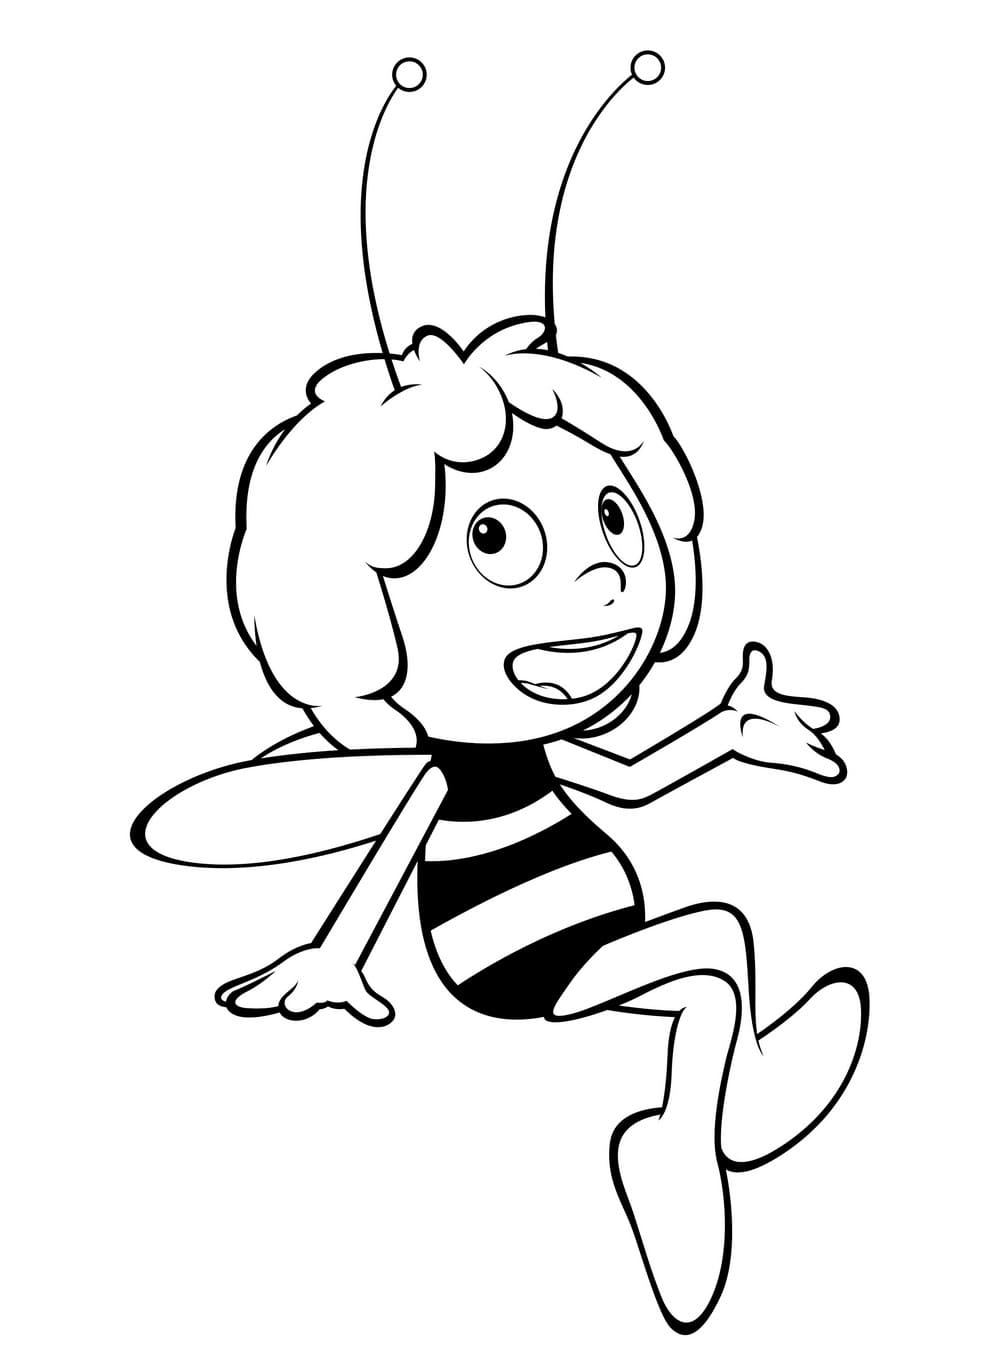 Пчелка раскраска распечатать. Пчелка Майя раскраска для детей. Раскраска Пчелка Майя раскраска пчёлка Майя. Пчела раскраска для детей. Пчела Майя.